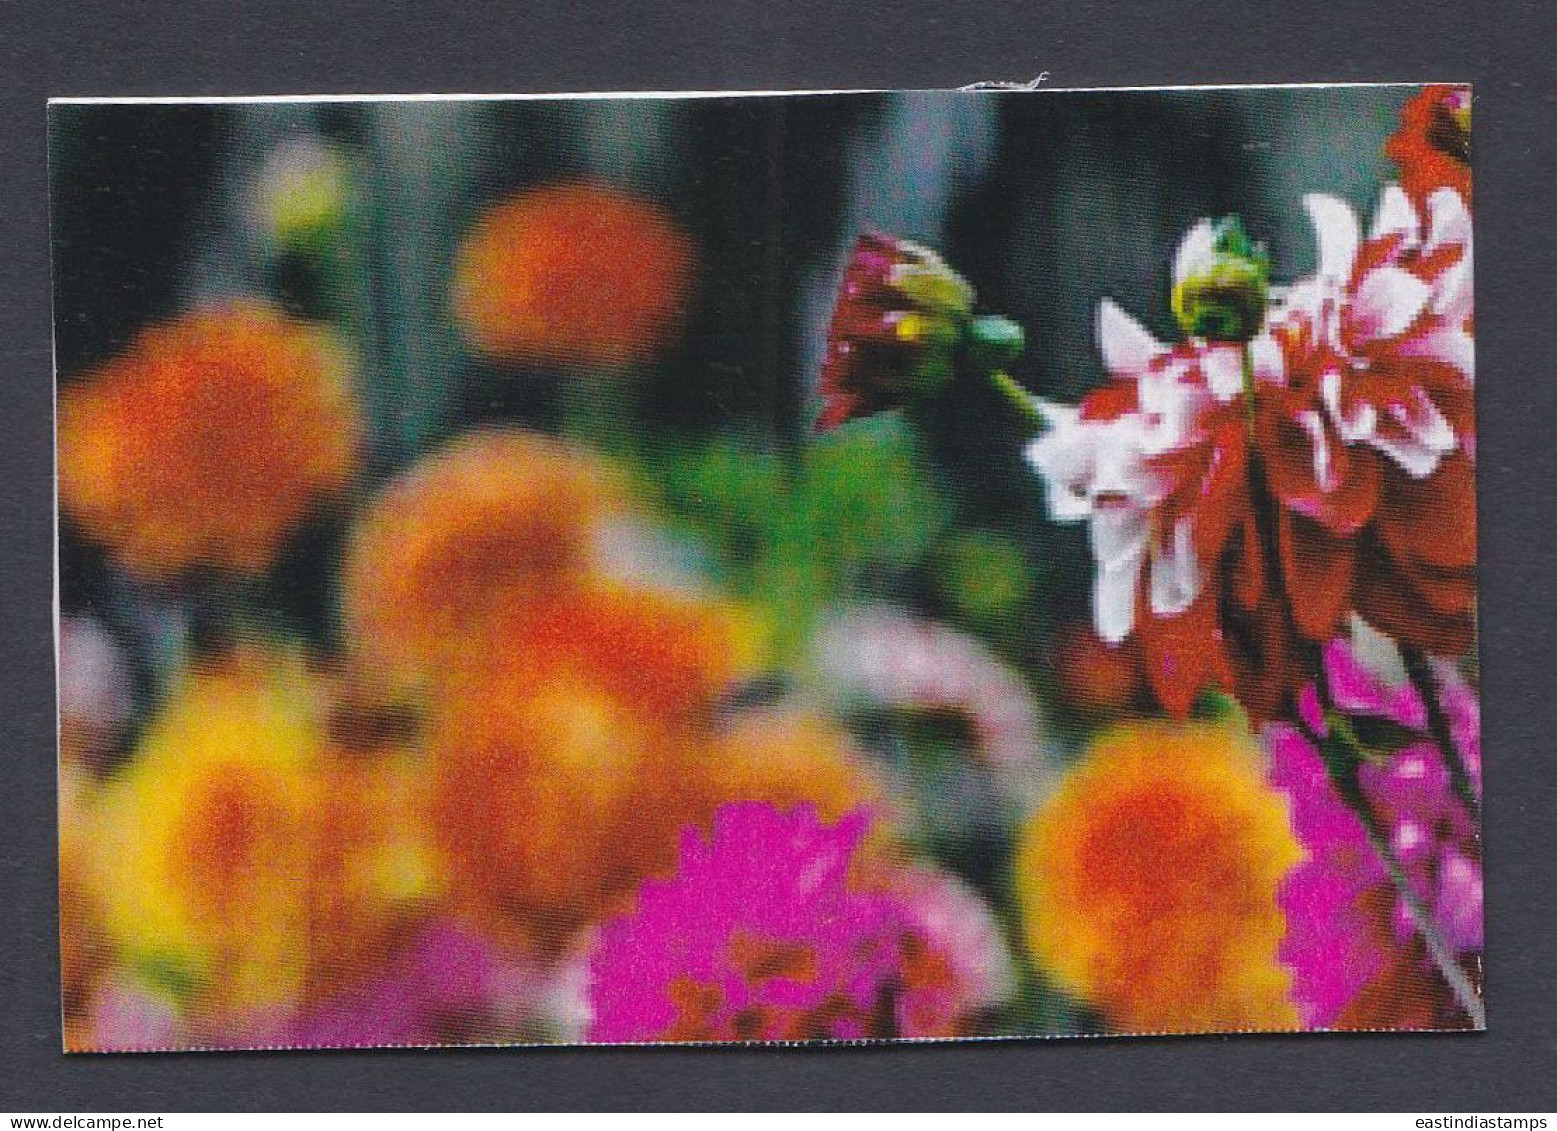 Bangladesh Mint Private Booklet Flower, Flowers, Flora - Bangladesch